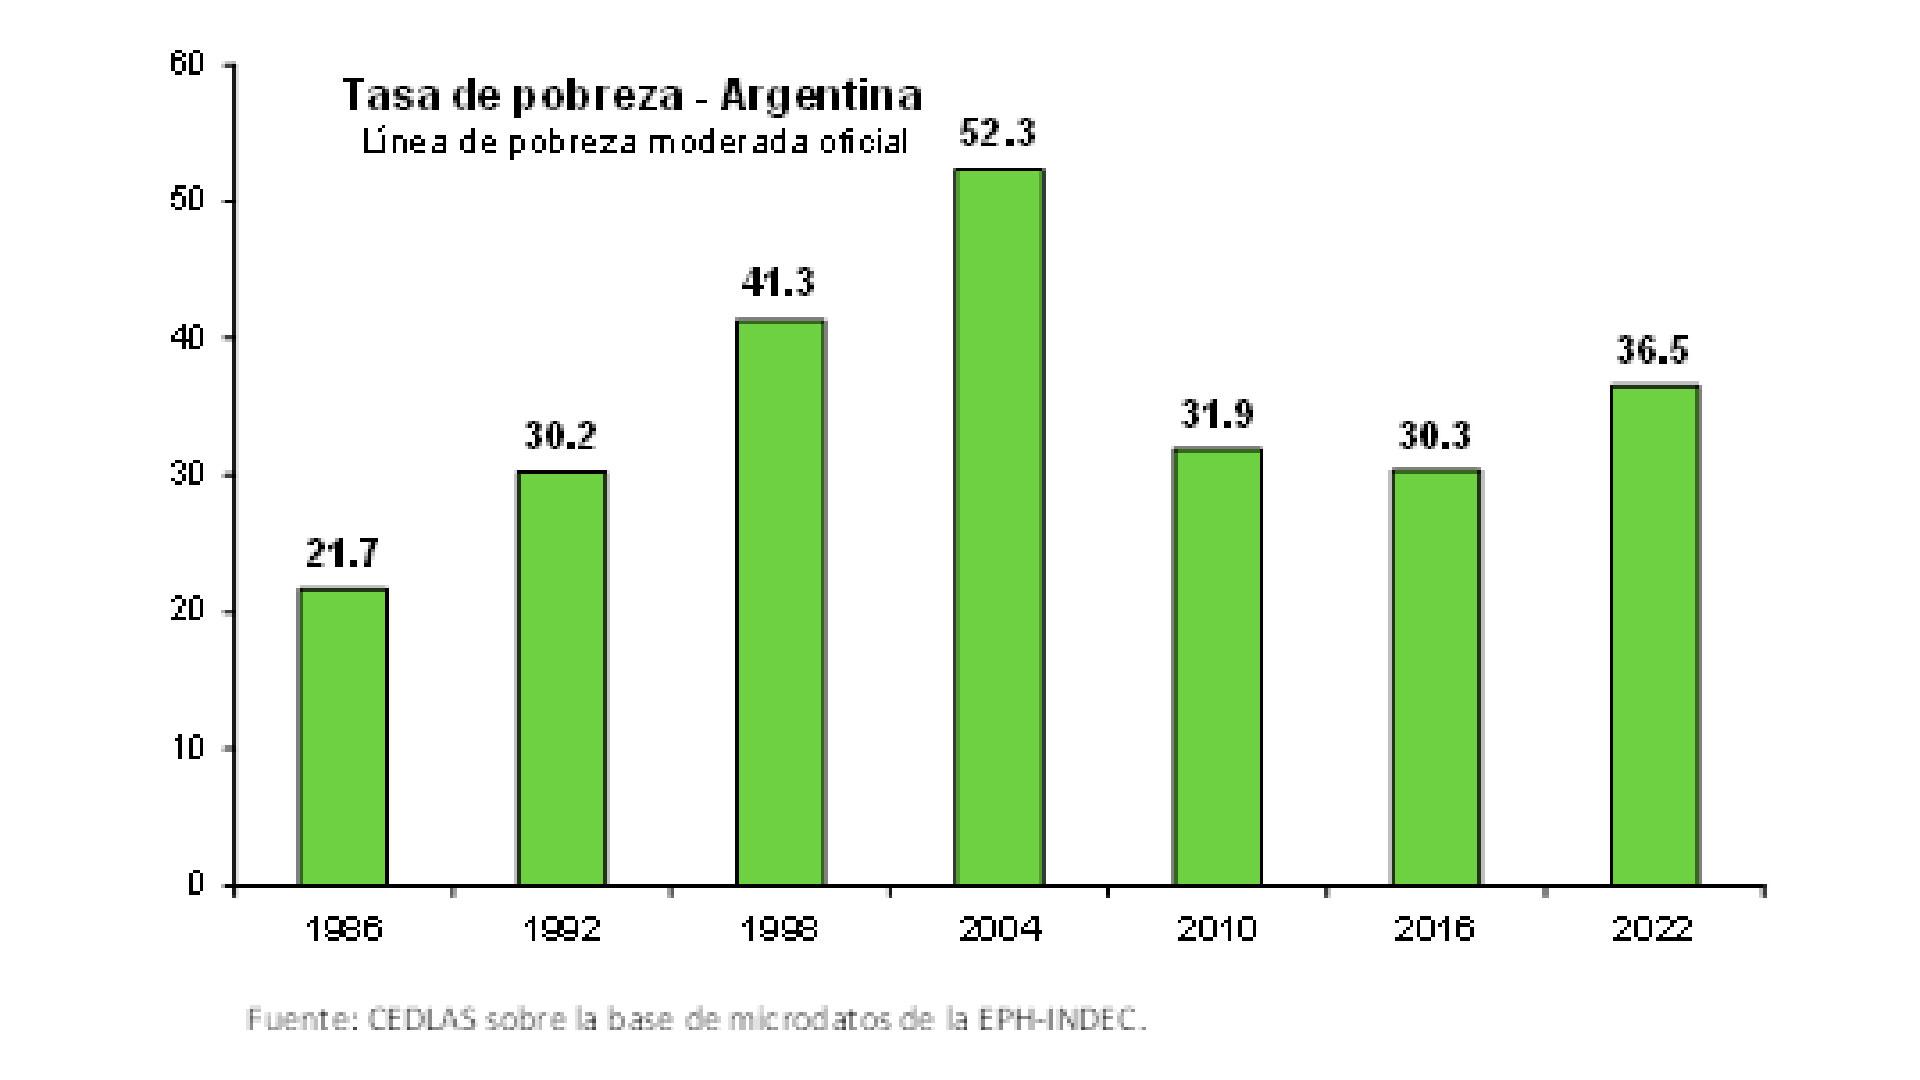 Evolución de la pobreza en la Argentina
Cedlas en base a datos propios y oficiales